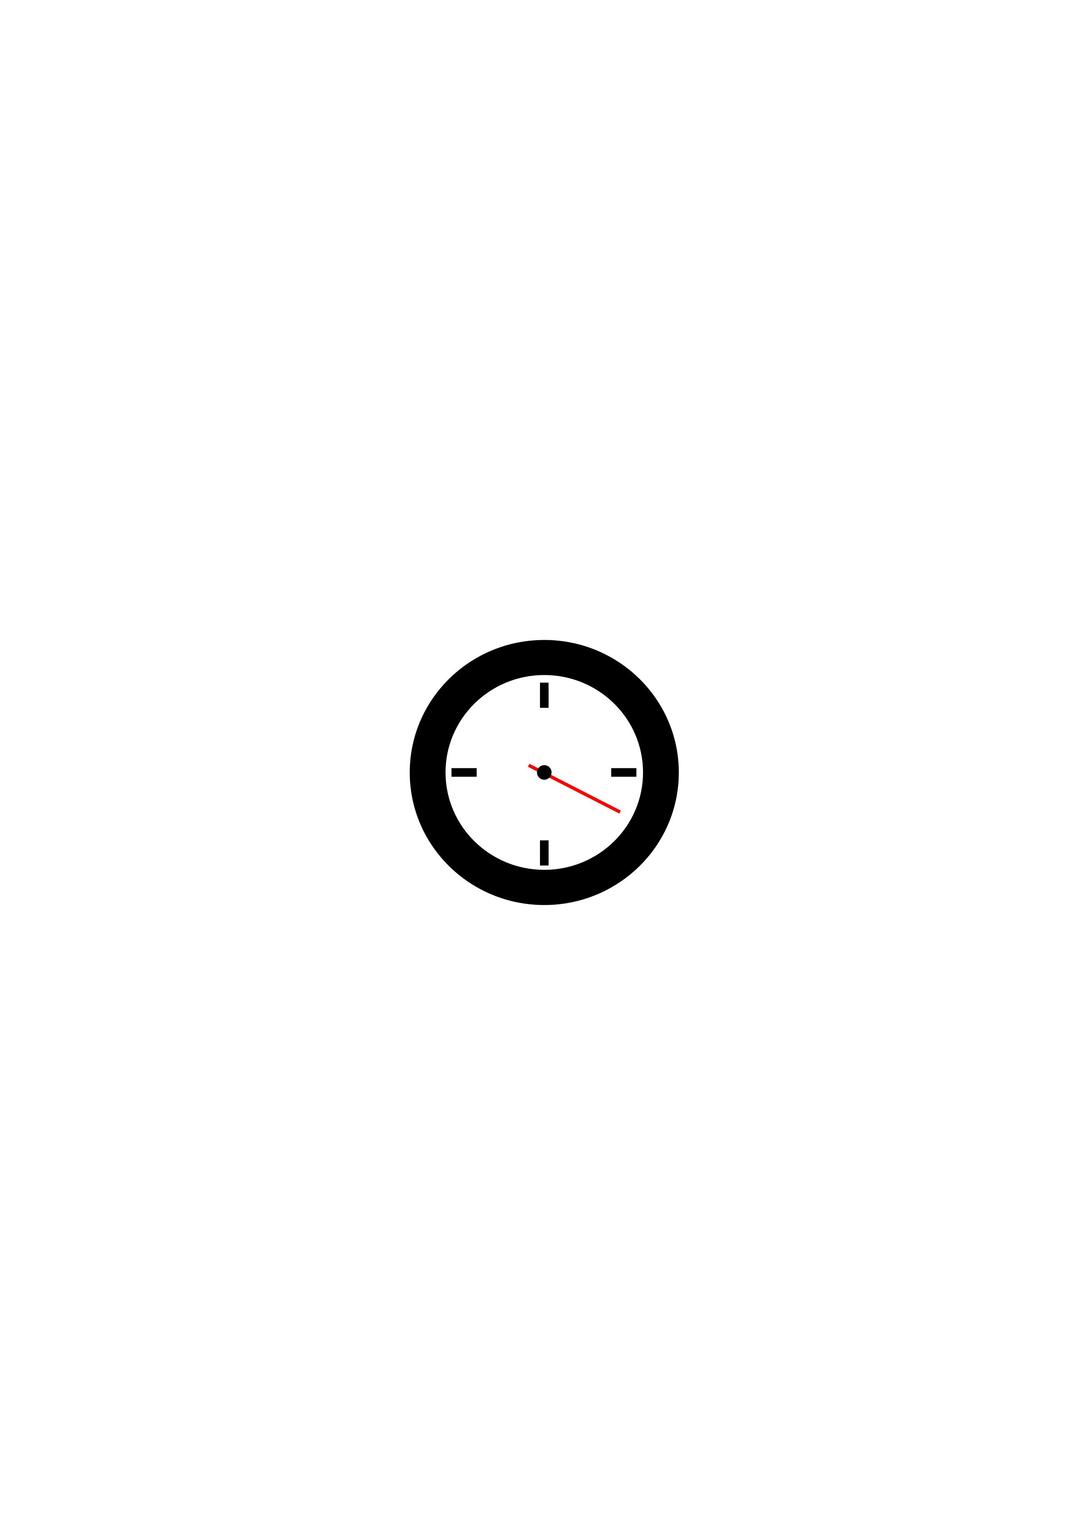 Second Clock png transparent